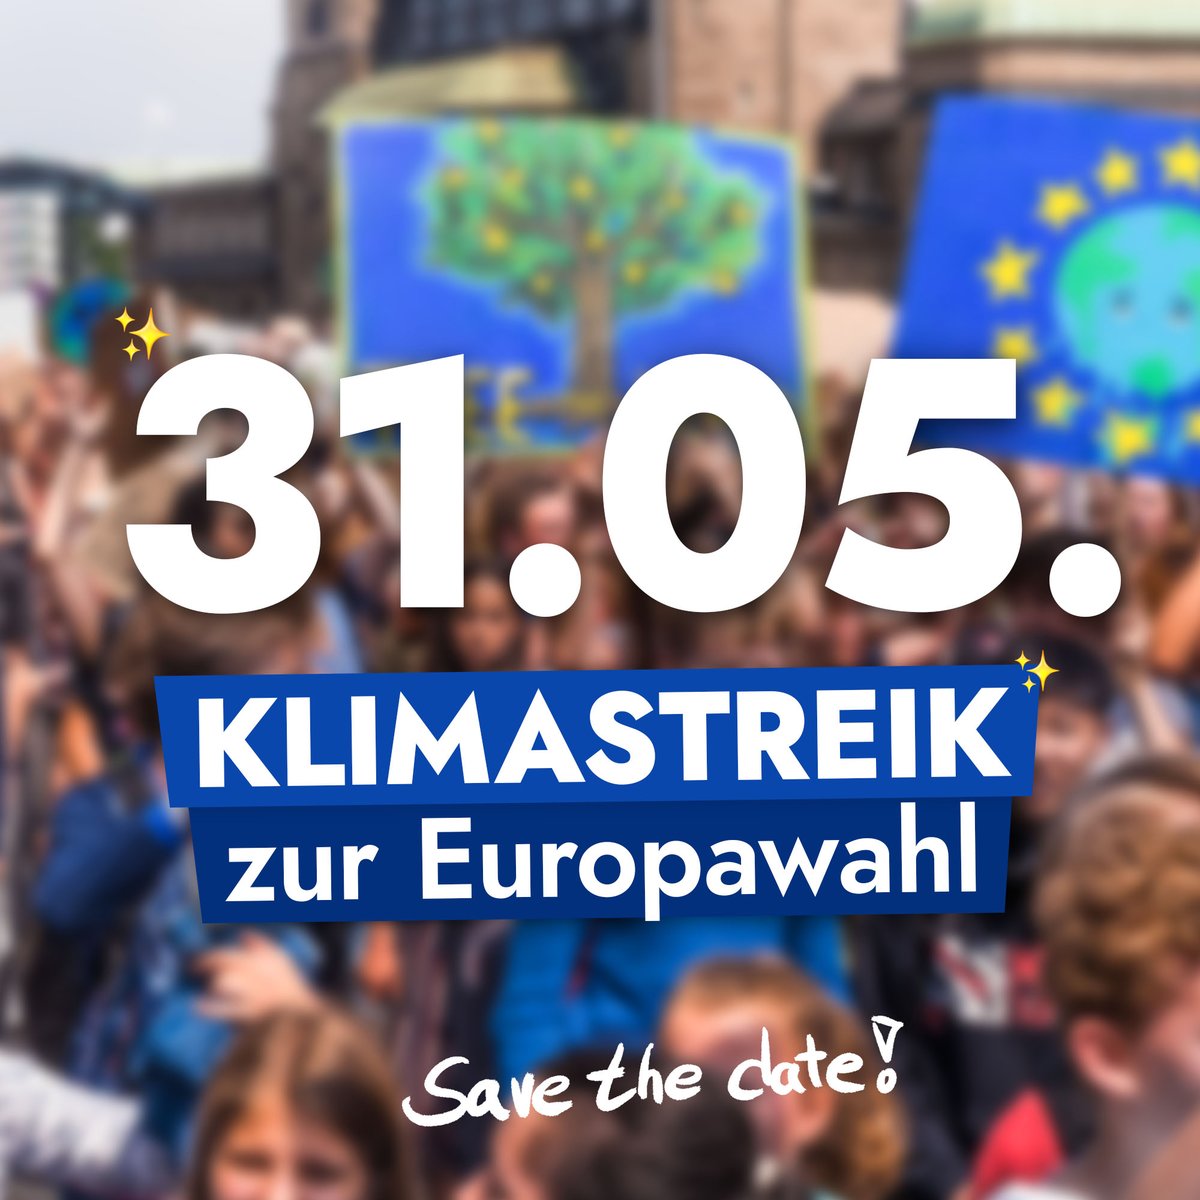 💥 Klimastreik zur Europawahl! 🇪🇺 Save the date! Am 31. Mai sind wir groß auf der Straße, um vor der EU-Wahl für klimagerechte Politik und Demokratie auf die Straße zu gehen! Bei der Europawahl 2019 gab es unseretwegen eine historisch hohe Wahlbeteiligung und...